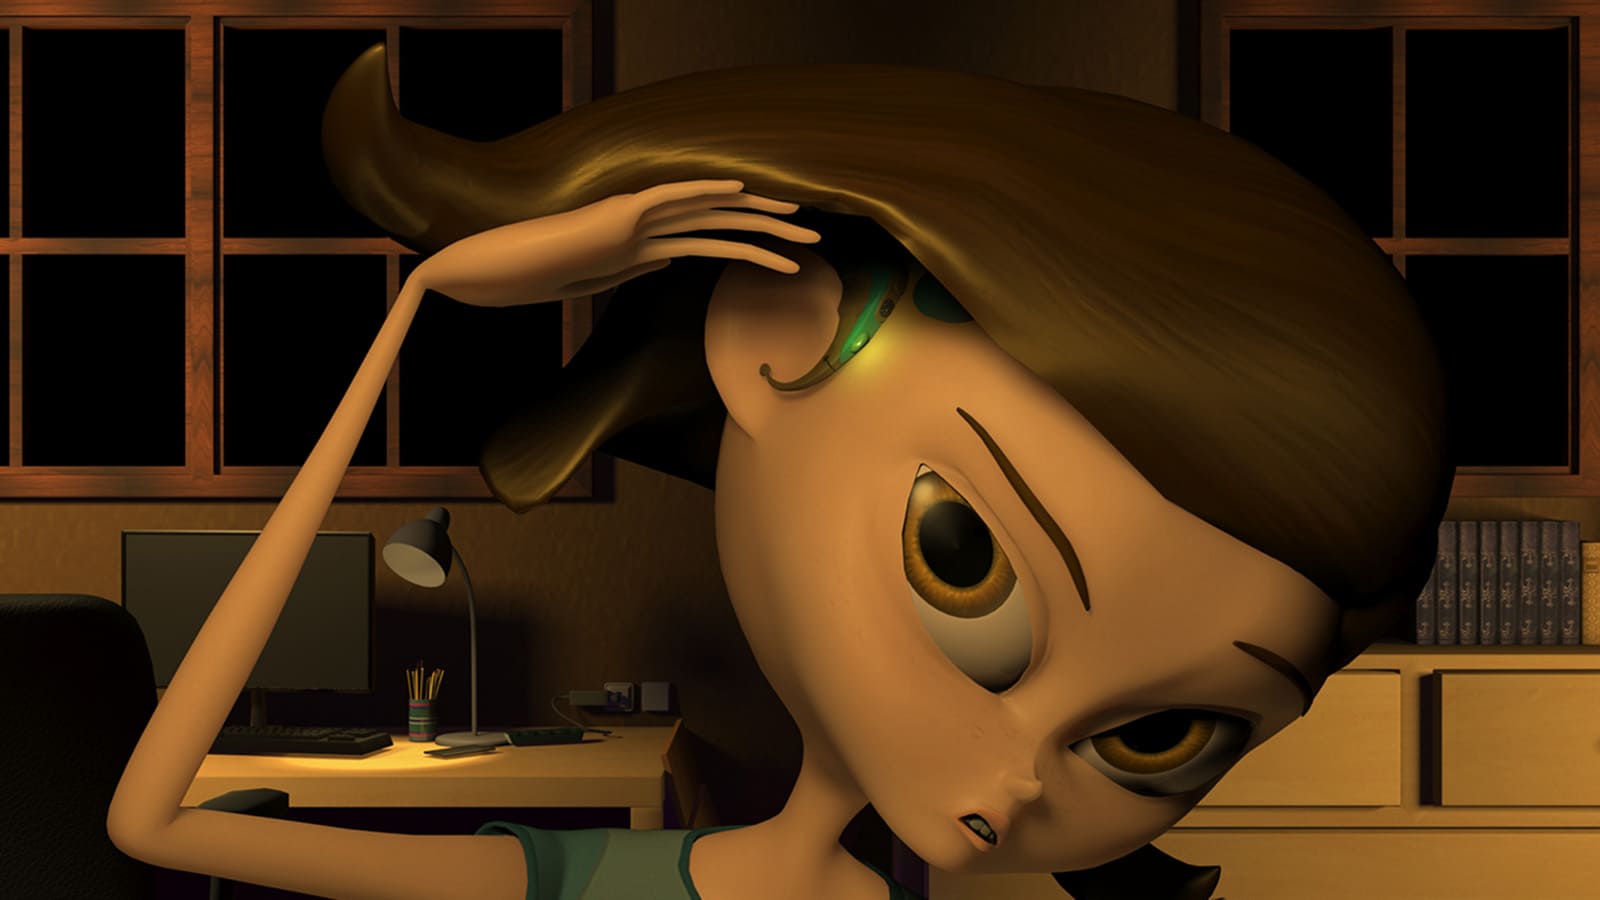 La protagonista recuerda que lleva un dispositivo auditivo en la oreja y lo mira desconsolada.